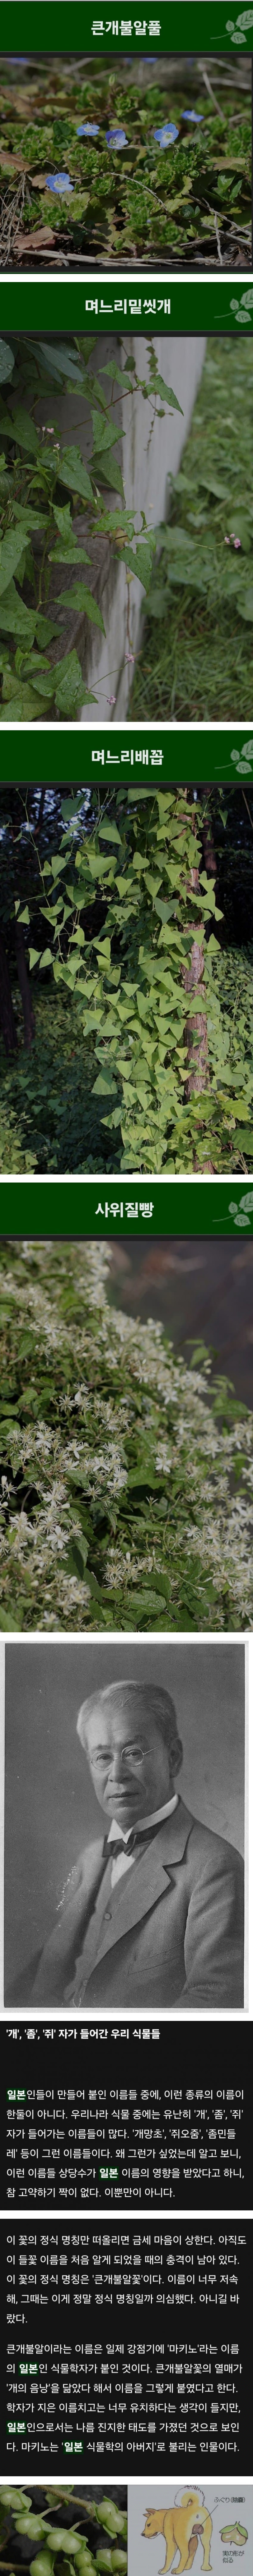 한국 식물들 중 천박한 이름이 많은 이유.jpg